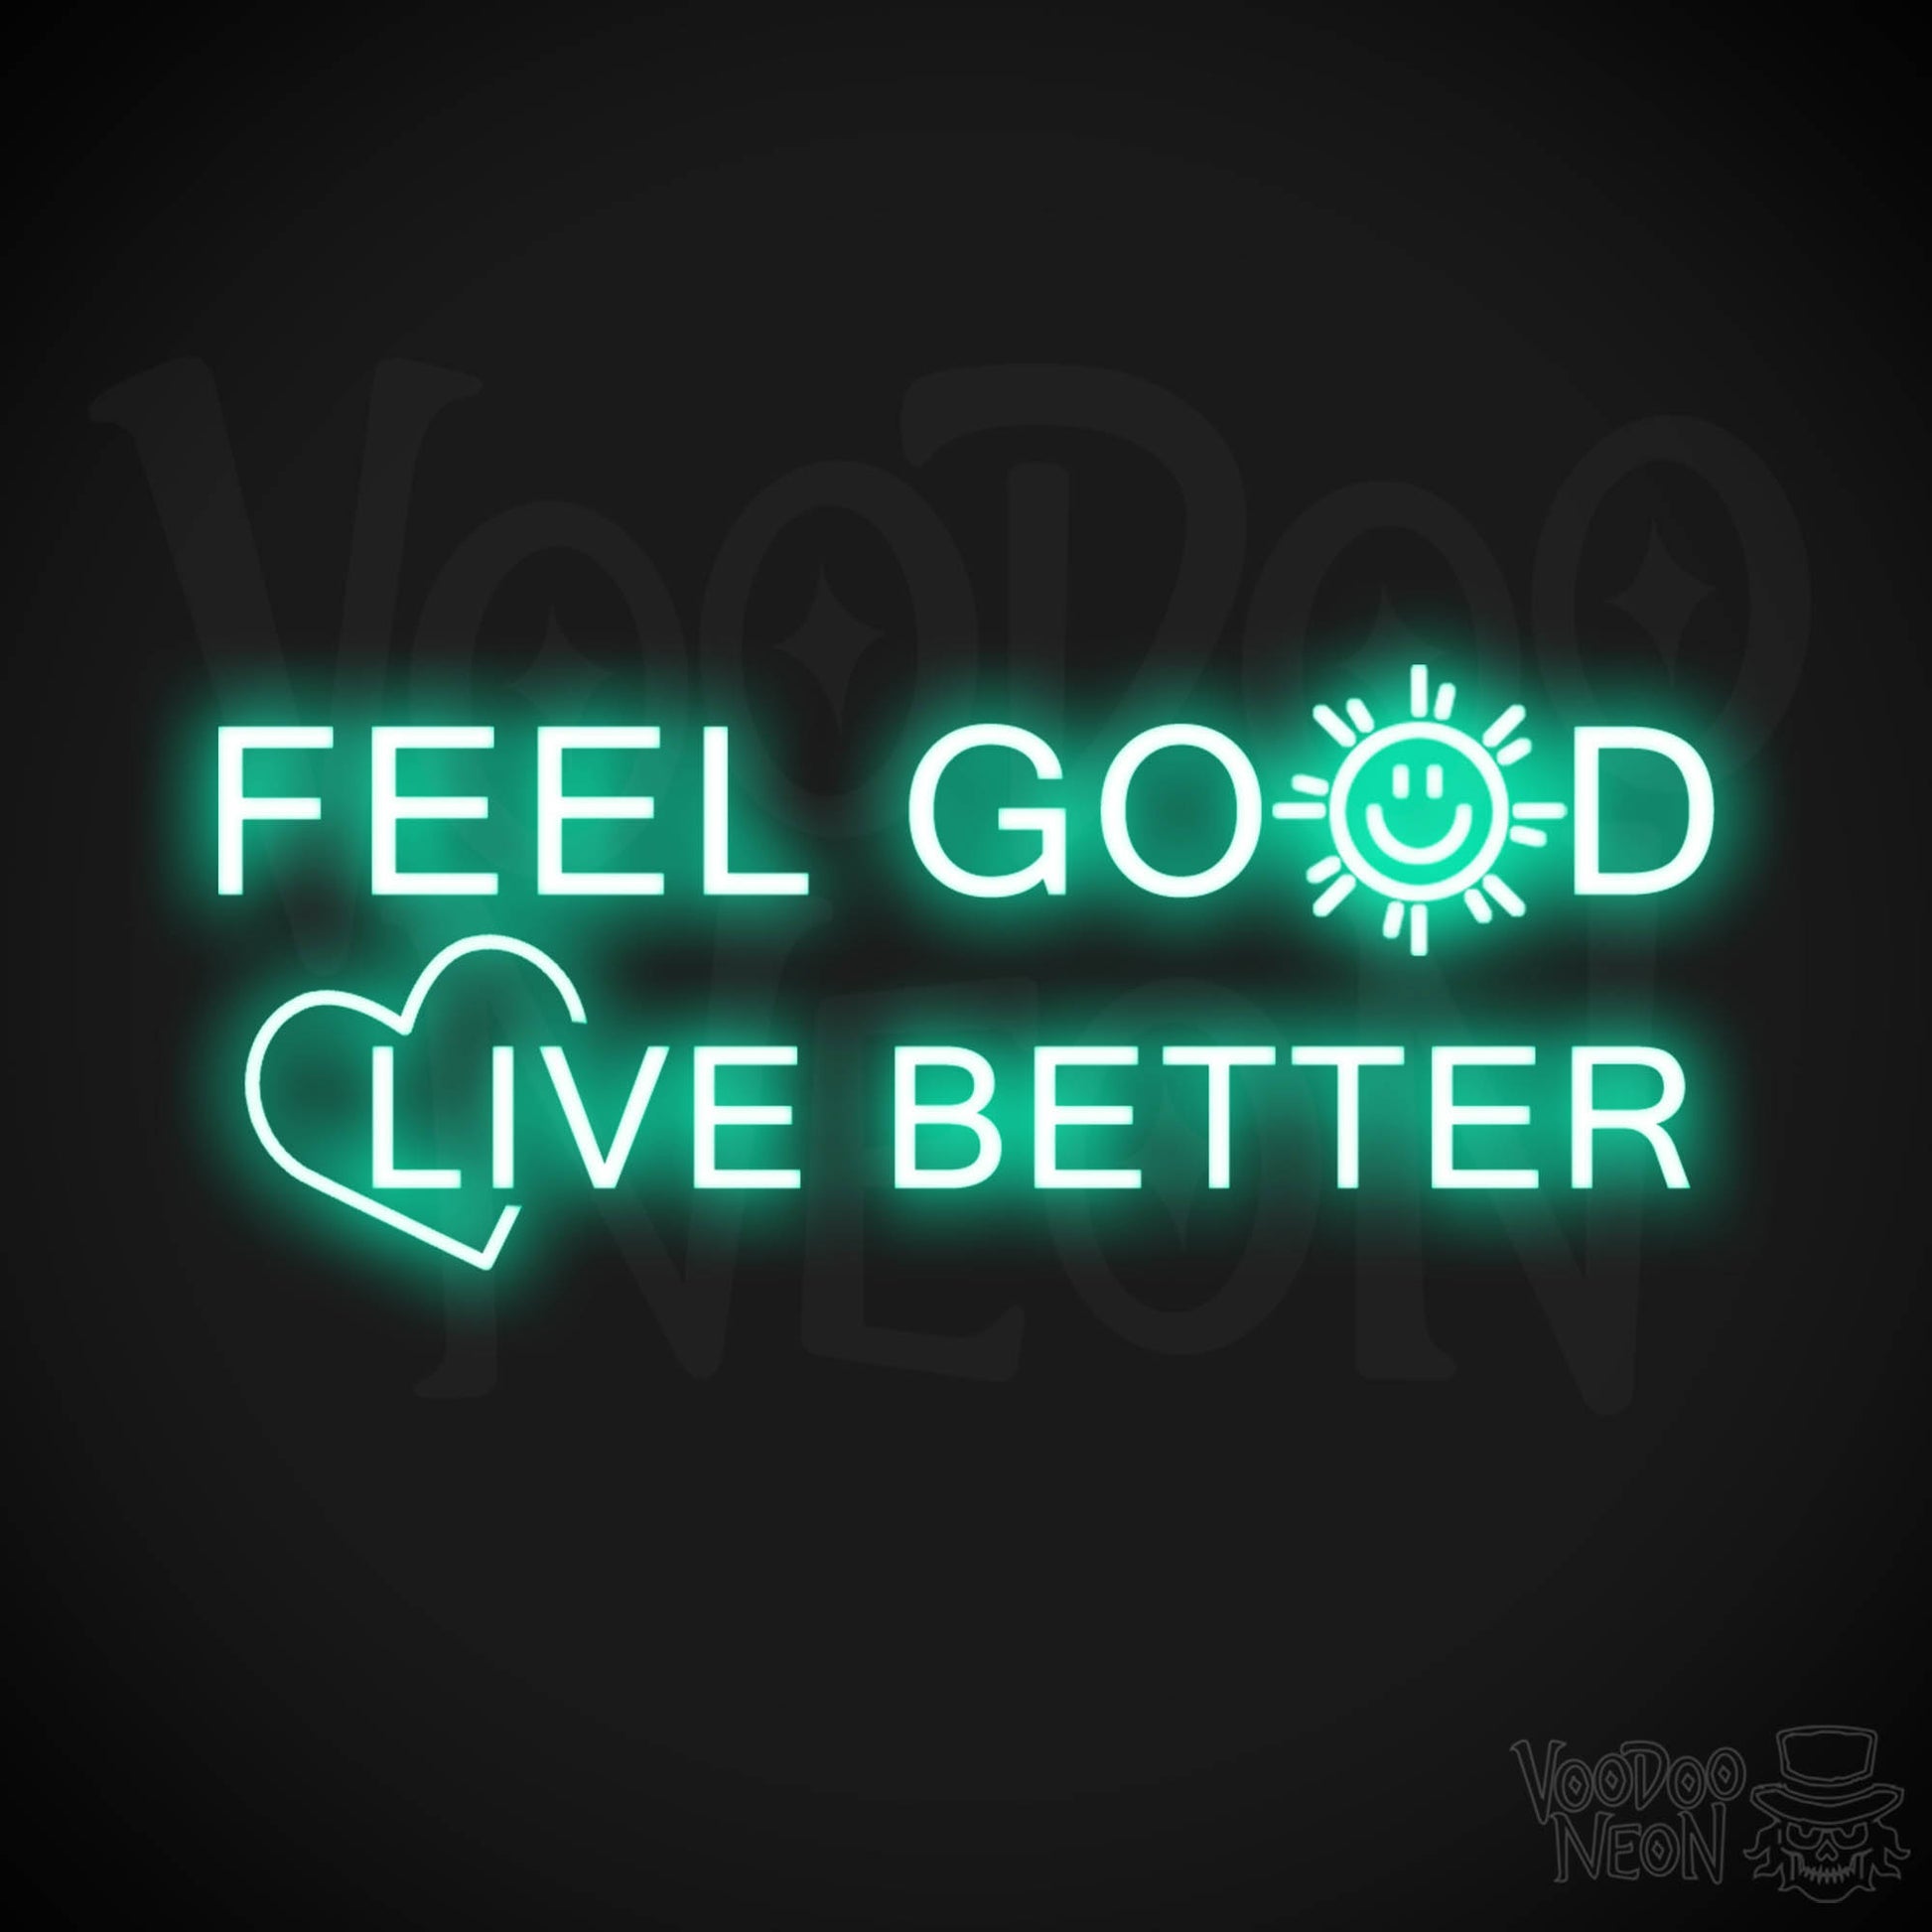 Feel Good Live Better Neon Sign - Feel Good Live Better Sign - Color Light Green